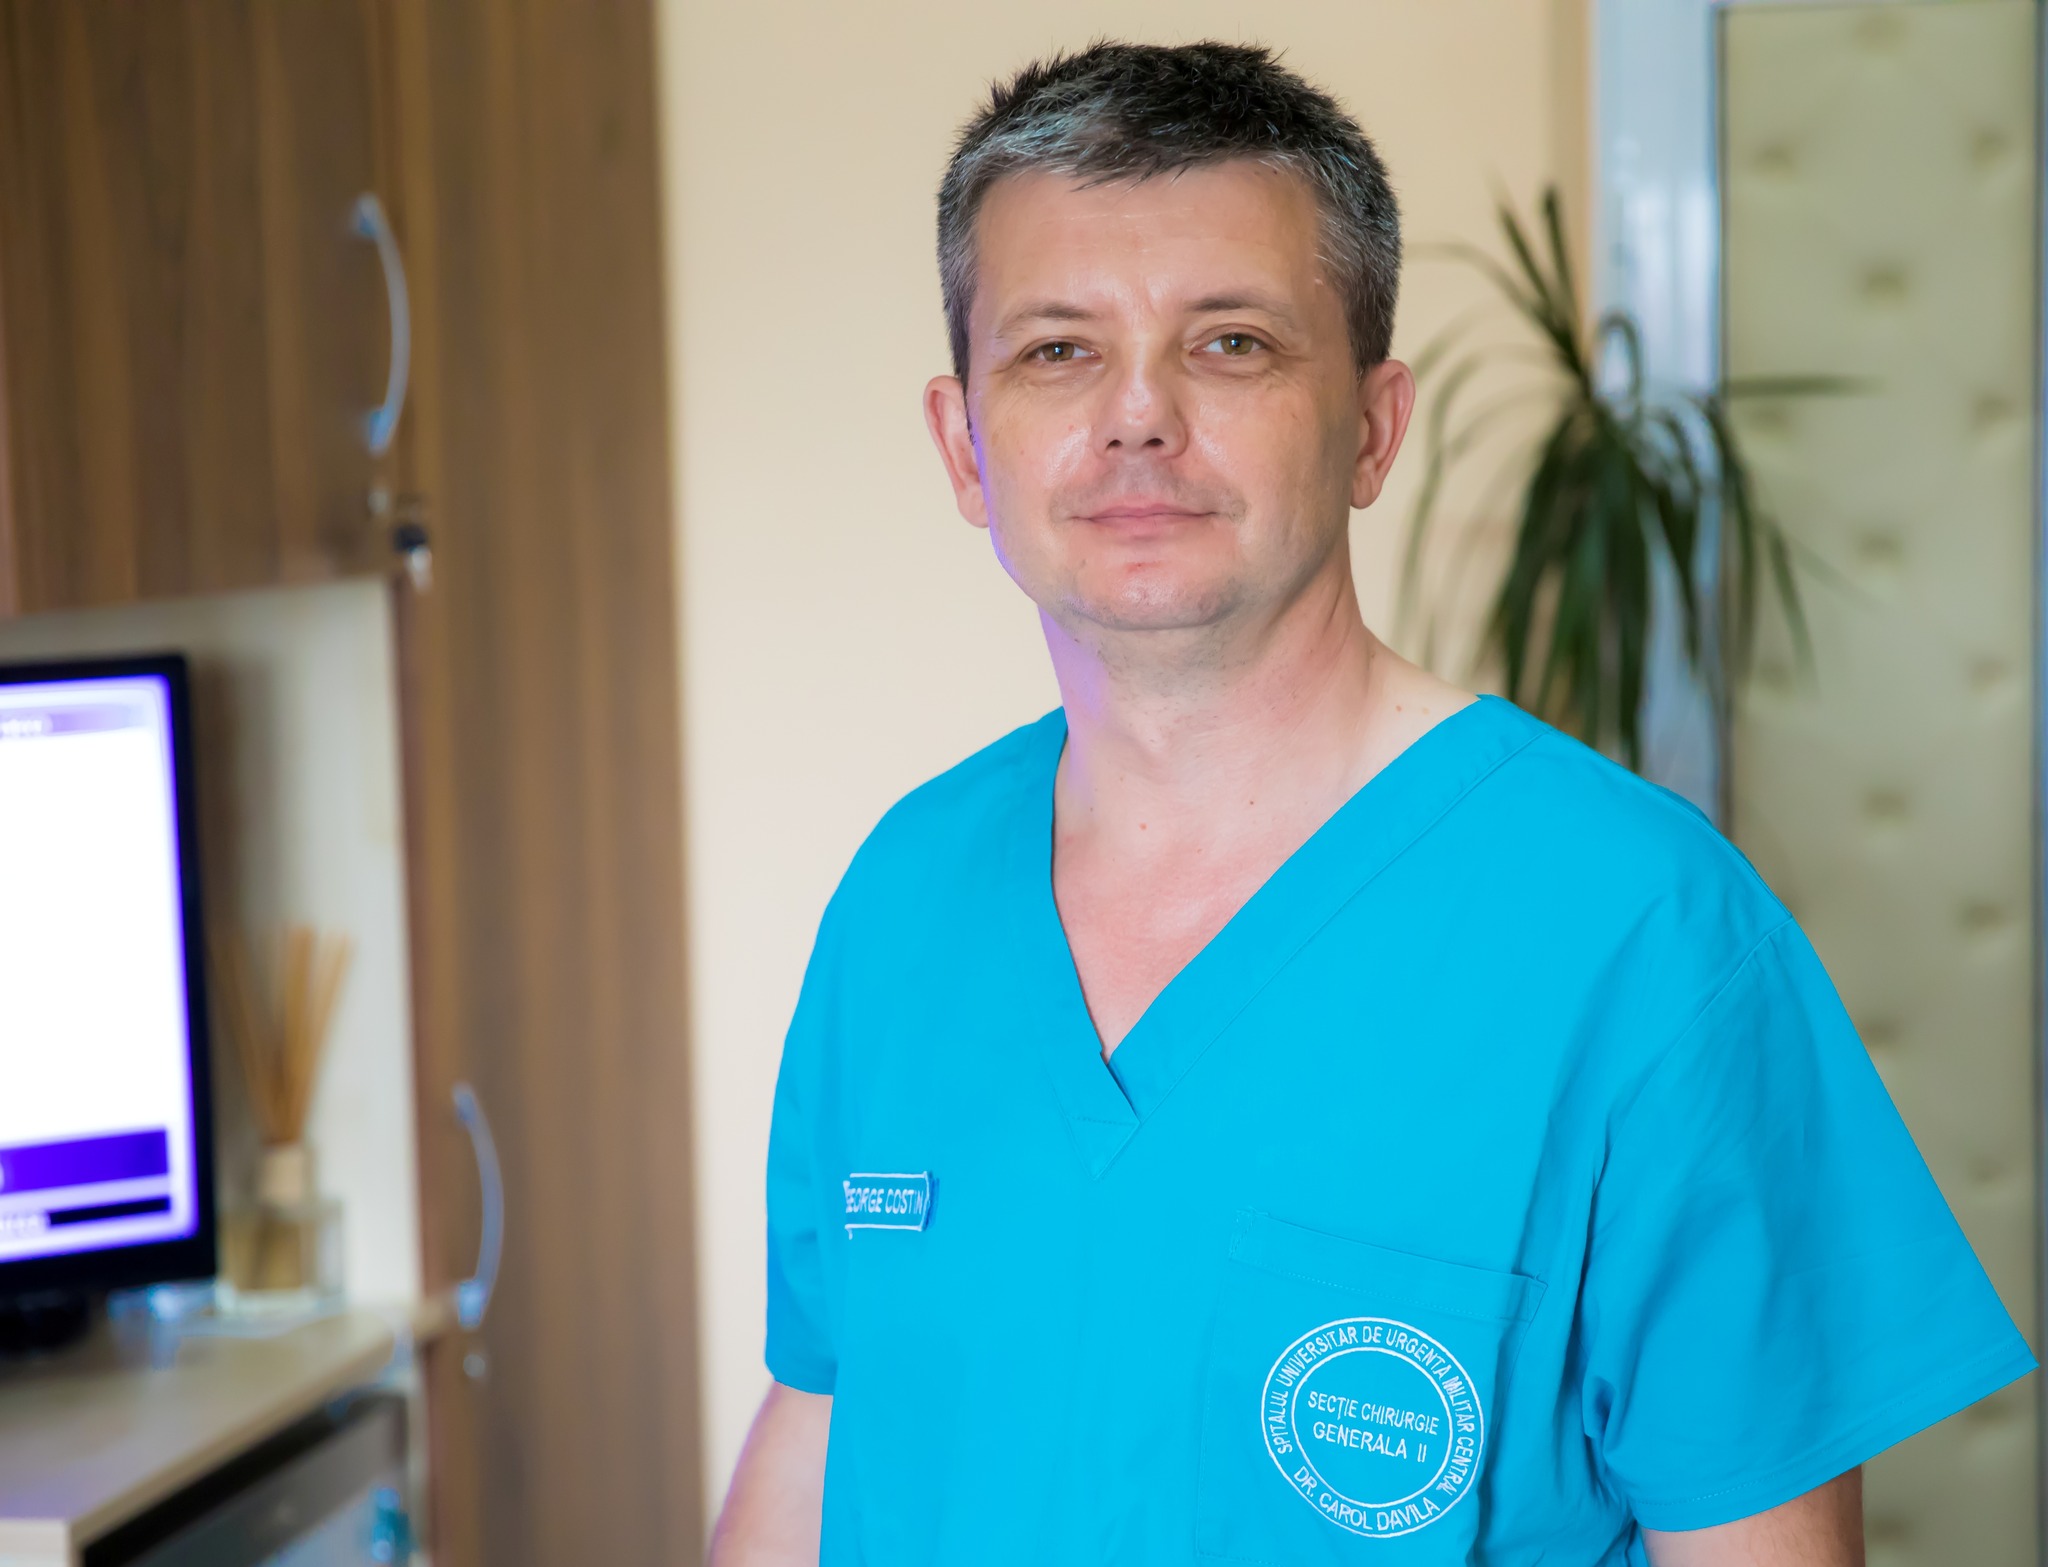 Medicul Costin Duțu a primit acreditarea de Master Surgeon in Hernia Surgery 